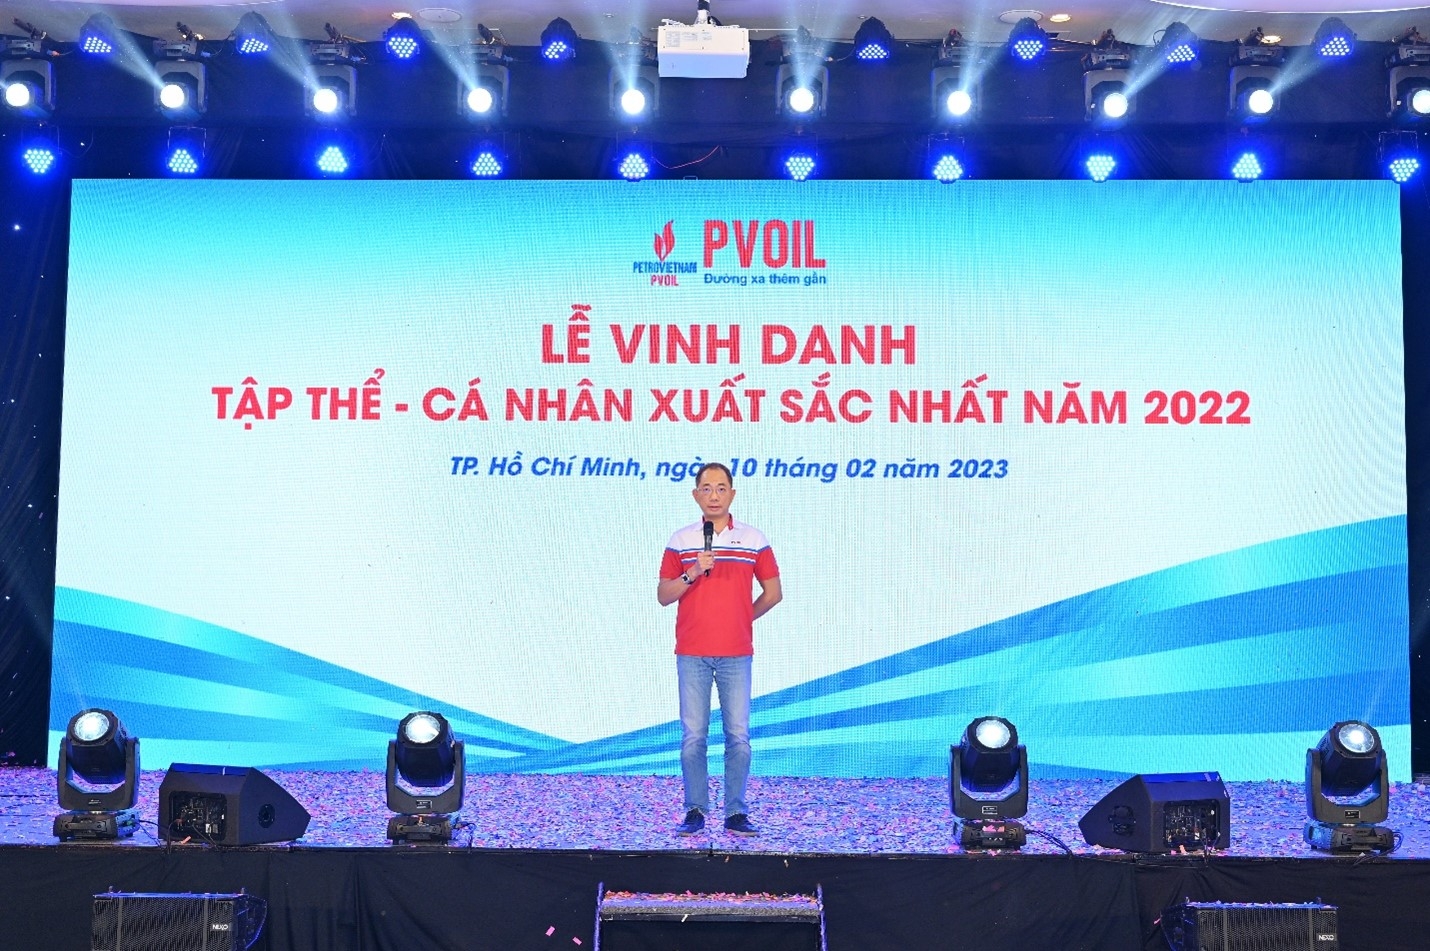 Ông Cao Hoài Dương - Bí thư Đảng ủy, Chủ tịch HĐQT PVOIL phát biểu chúc mừng các tập thể, cá nhân xuất sắc nhất năm 2022